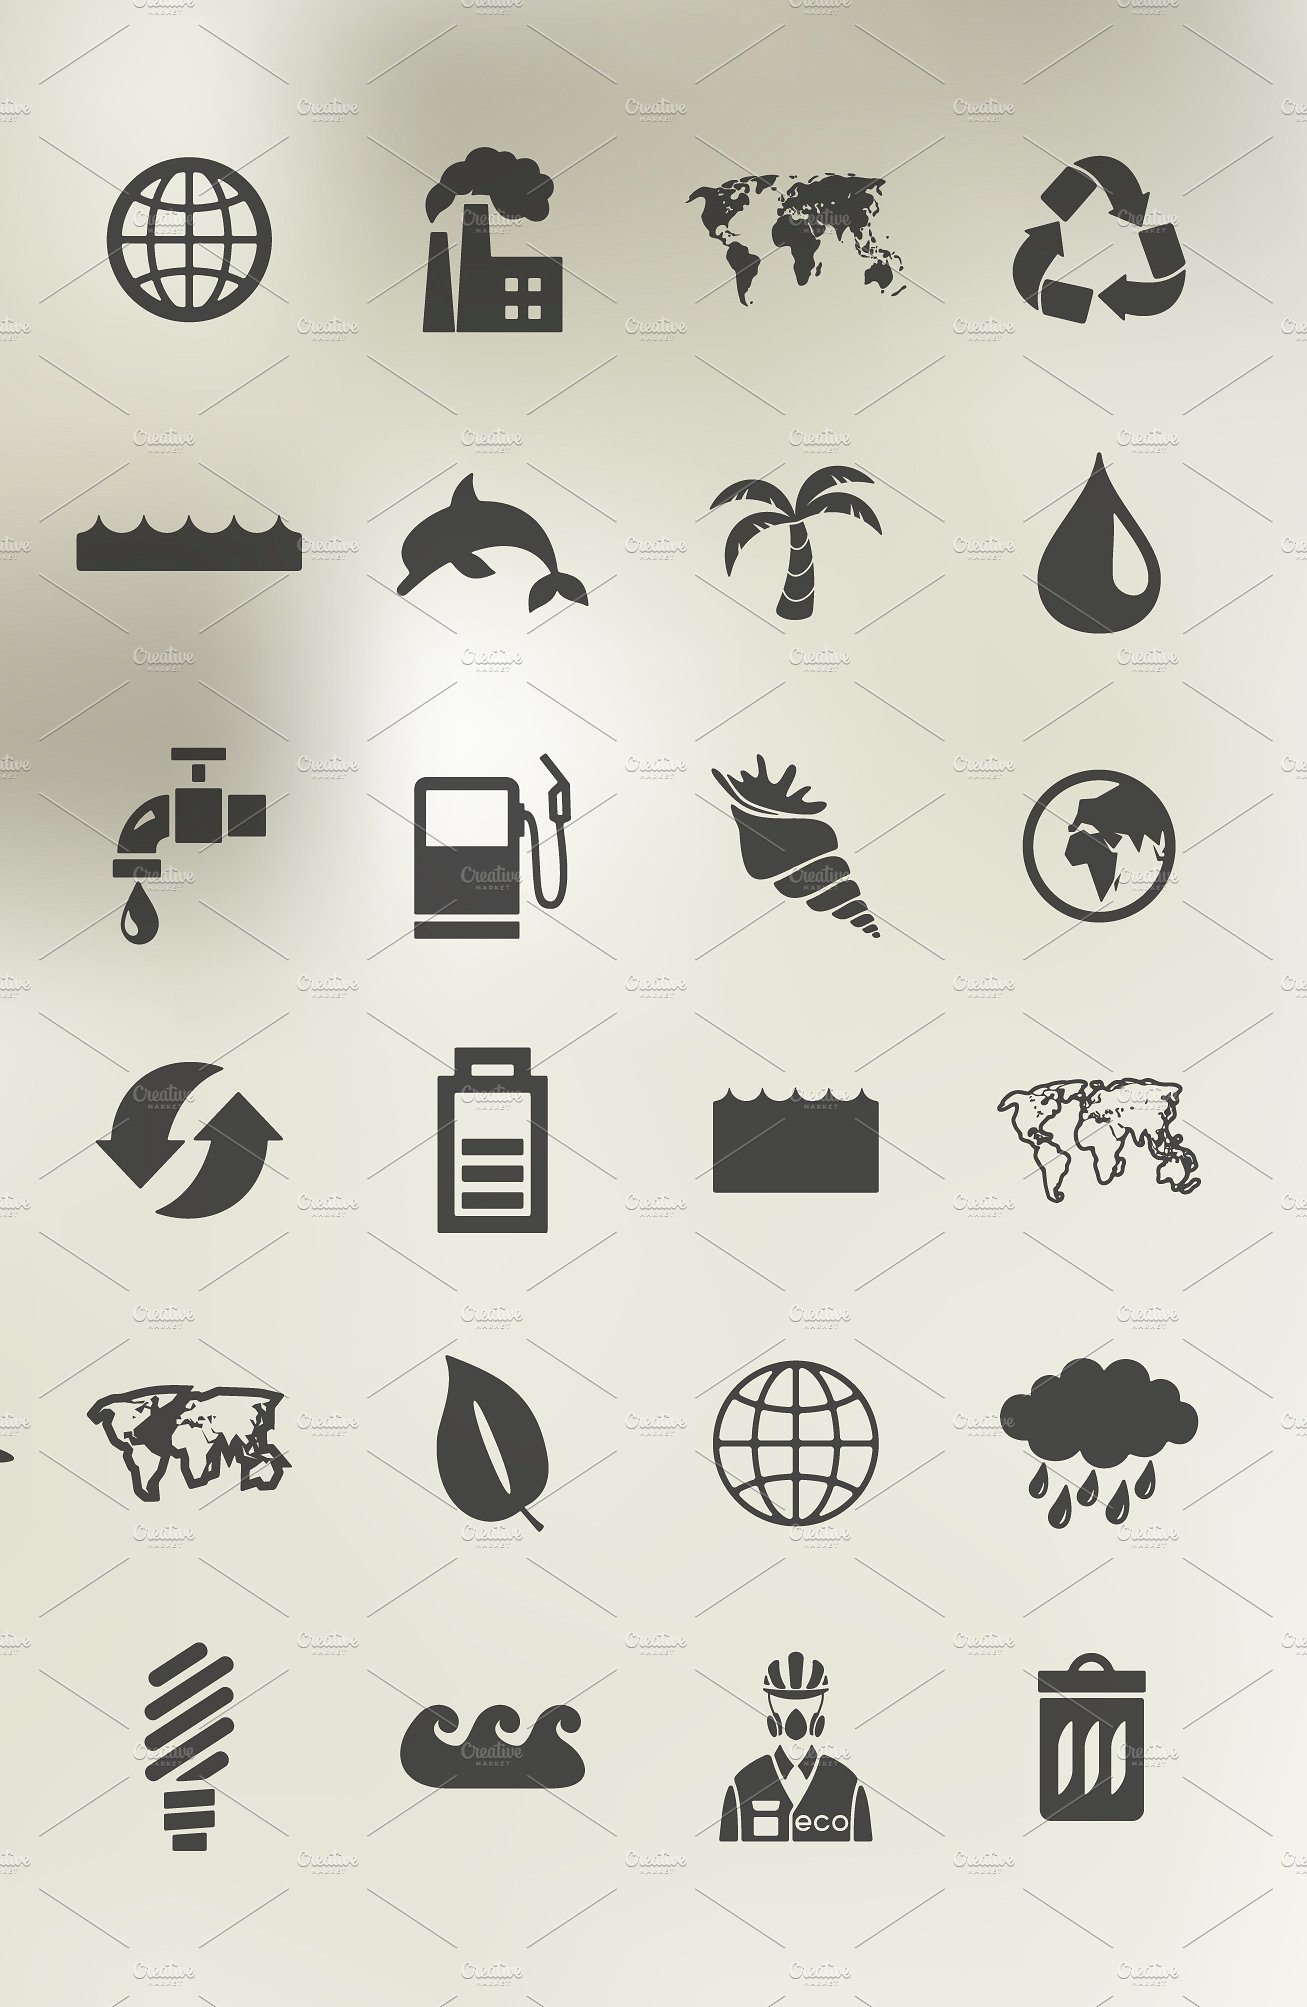 48 ECOLOGY icons